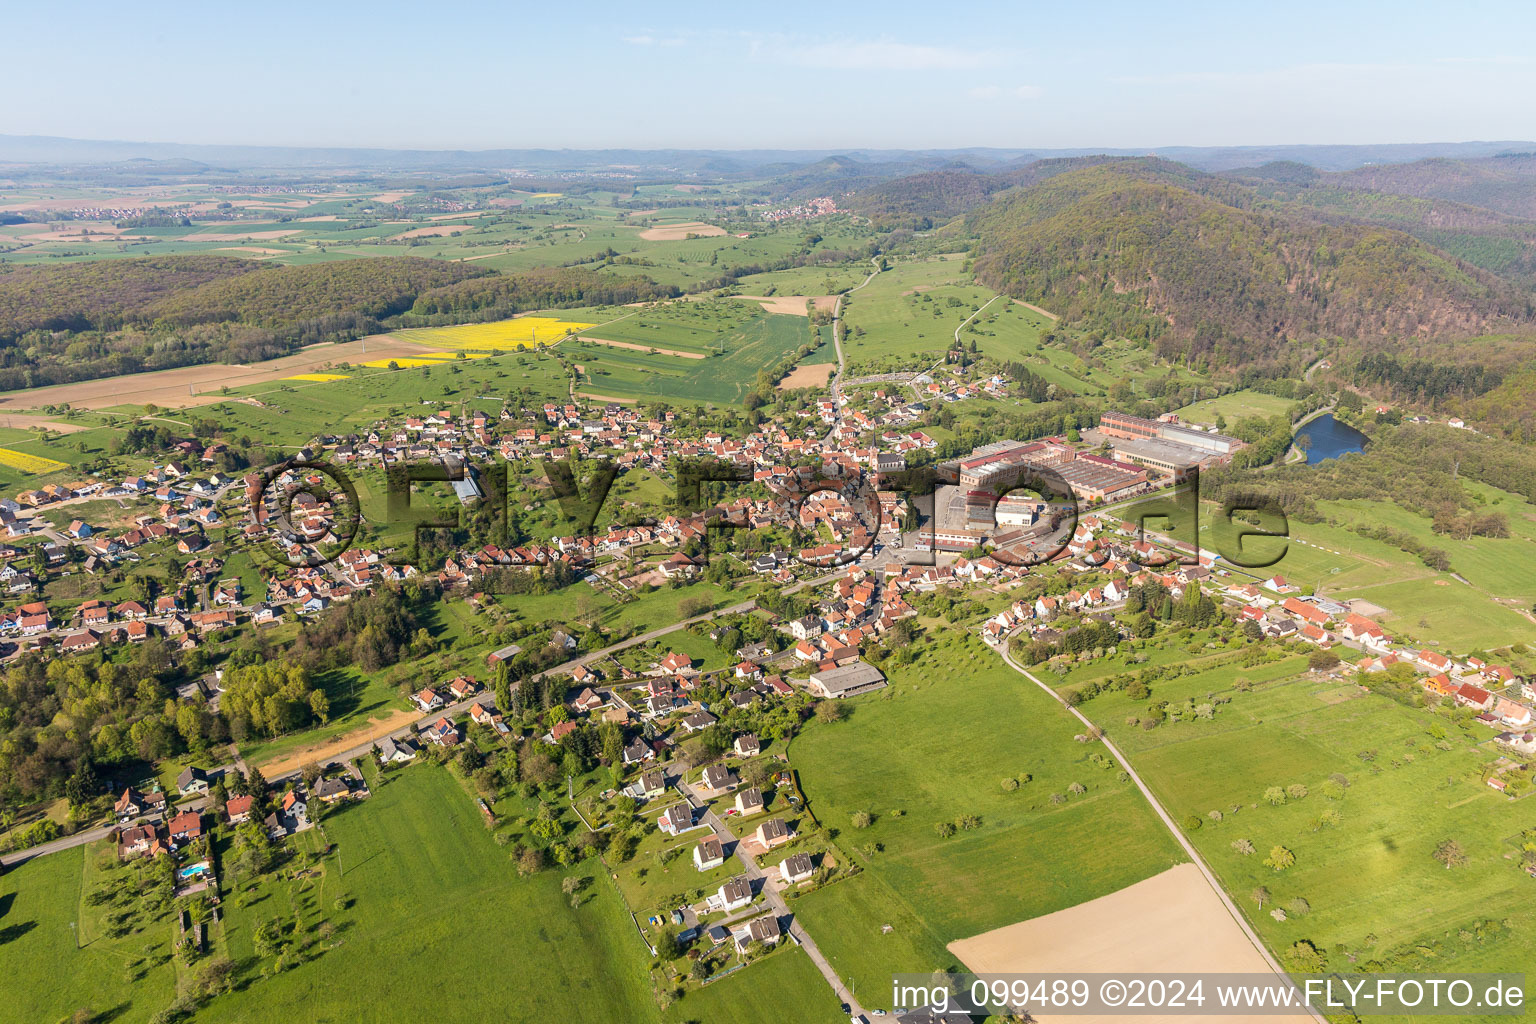 Luftbild von Dorf - Ansicht am Rande von landwirtschaftlichen Feldern und Nutzflächen in Zinswiller in Grand Est im Bundesland Bas-Rhin, Frankreich